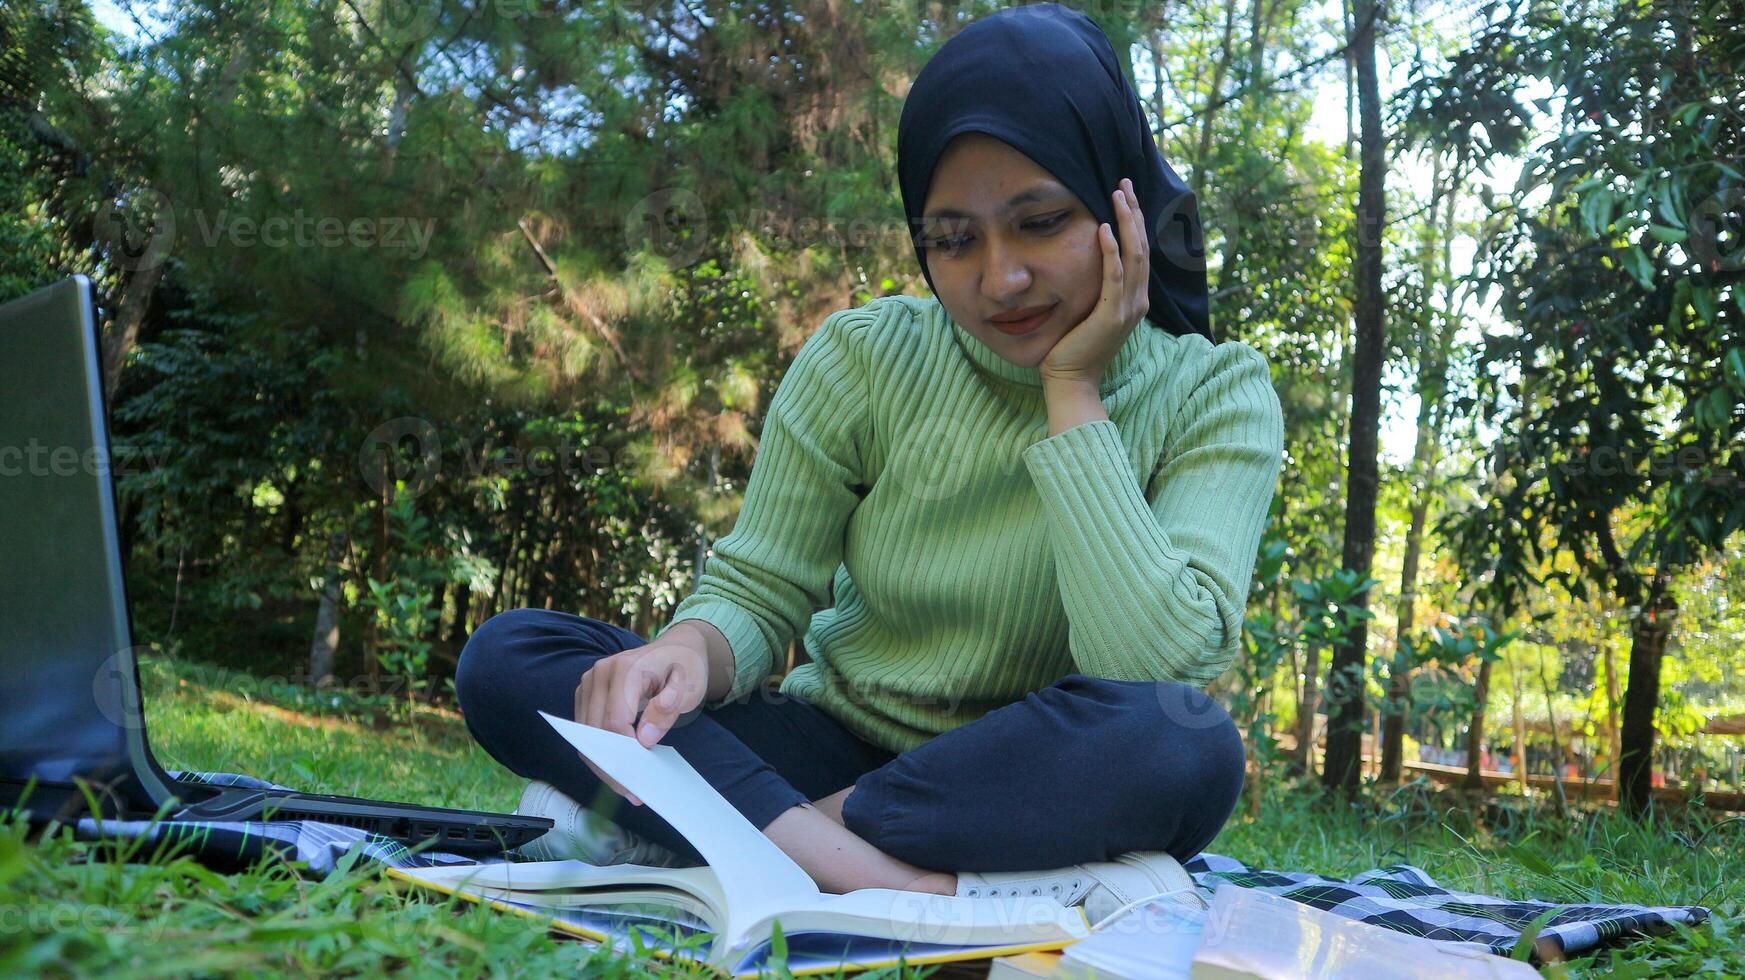 ontspannen moslim vrouw genieten van weekend Bij park, zittend Aan gras en lezing boek, leeg ruimte foto